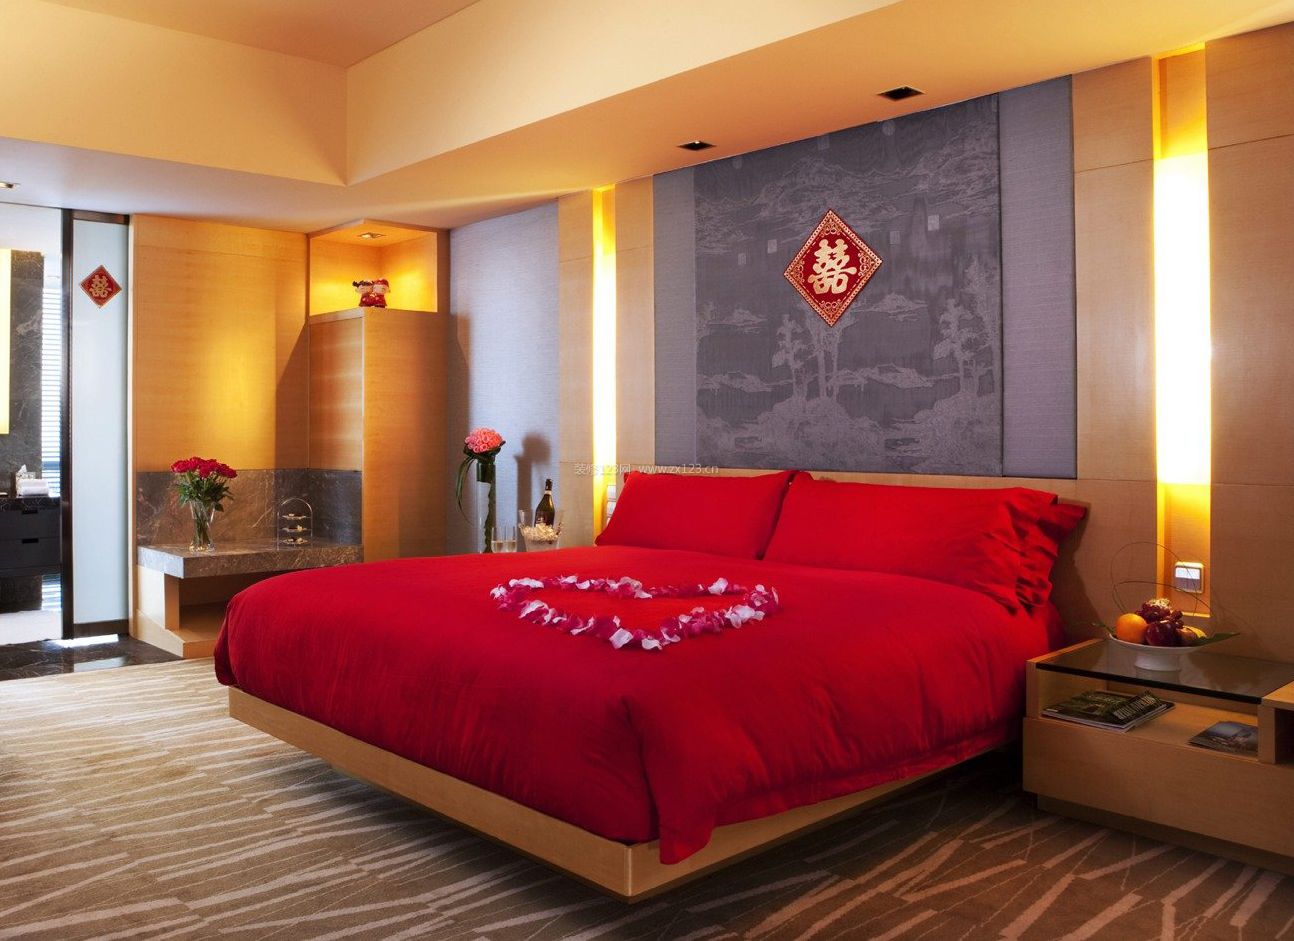 中式婚房卧室床品布置效果图